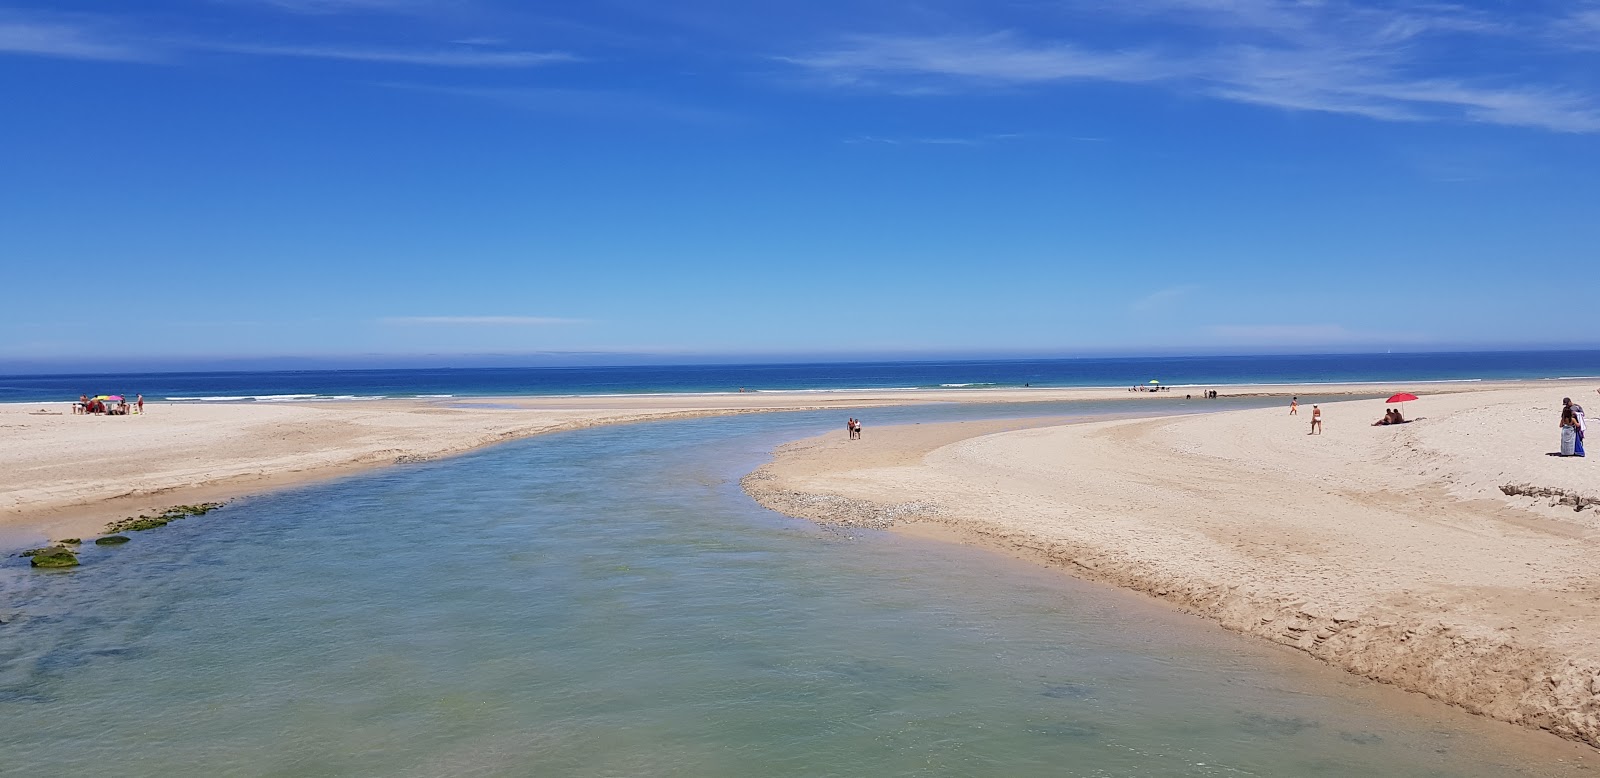 Praia de Baldaio II'in fotoğrafı beyaz kum yüzey ile